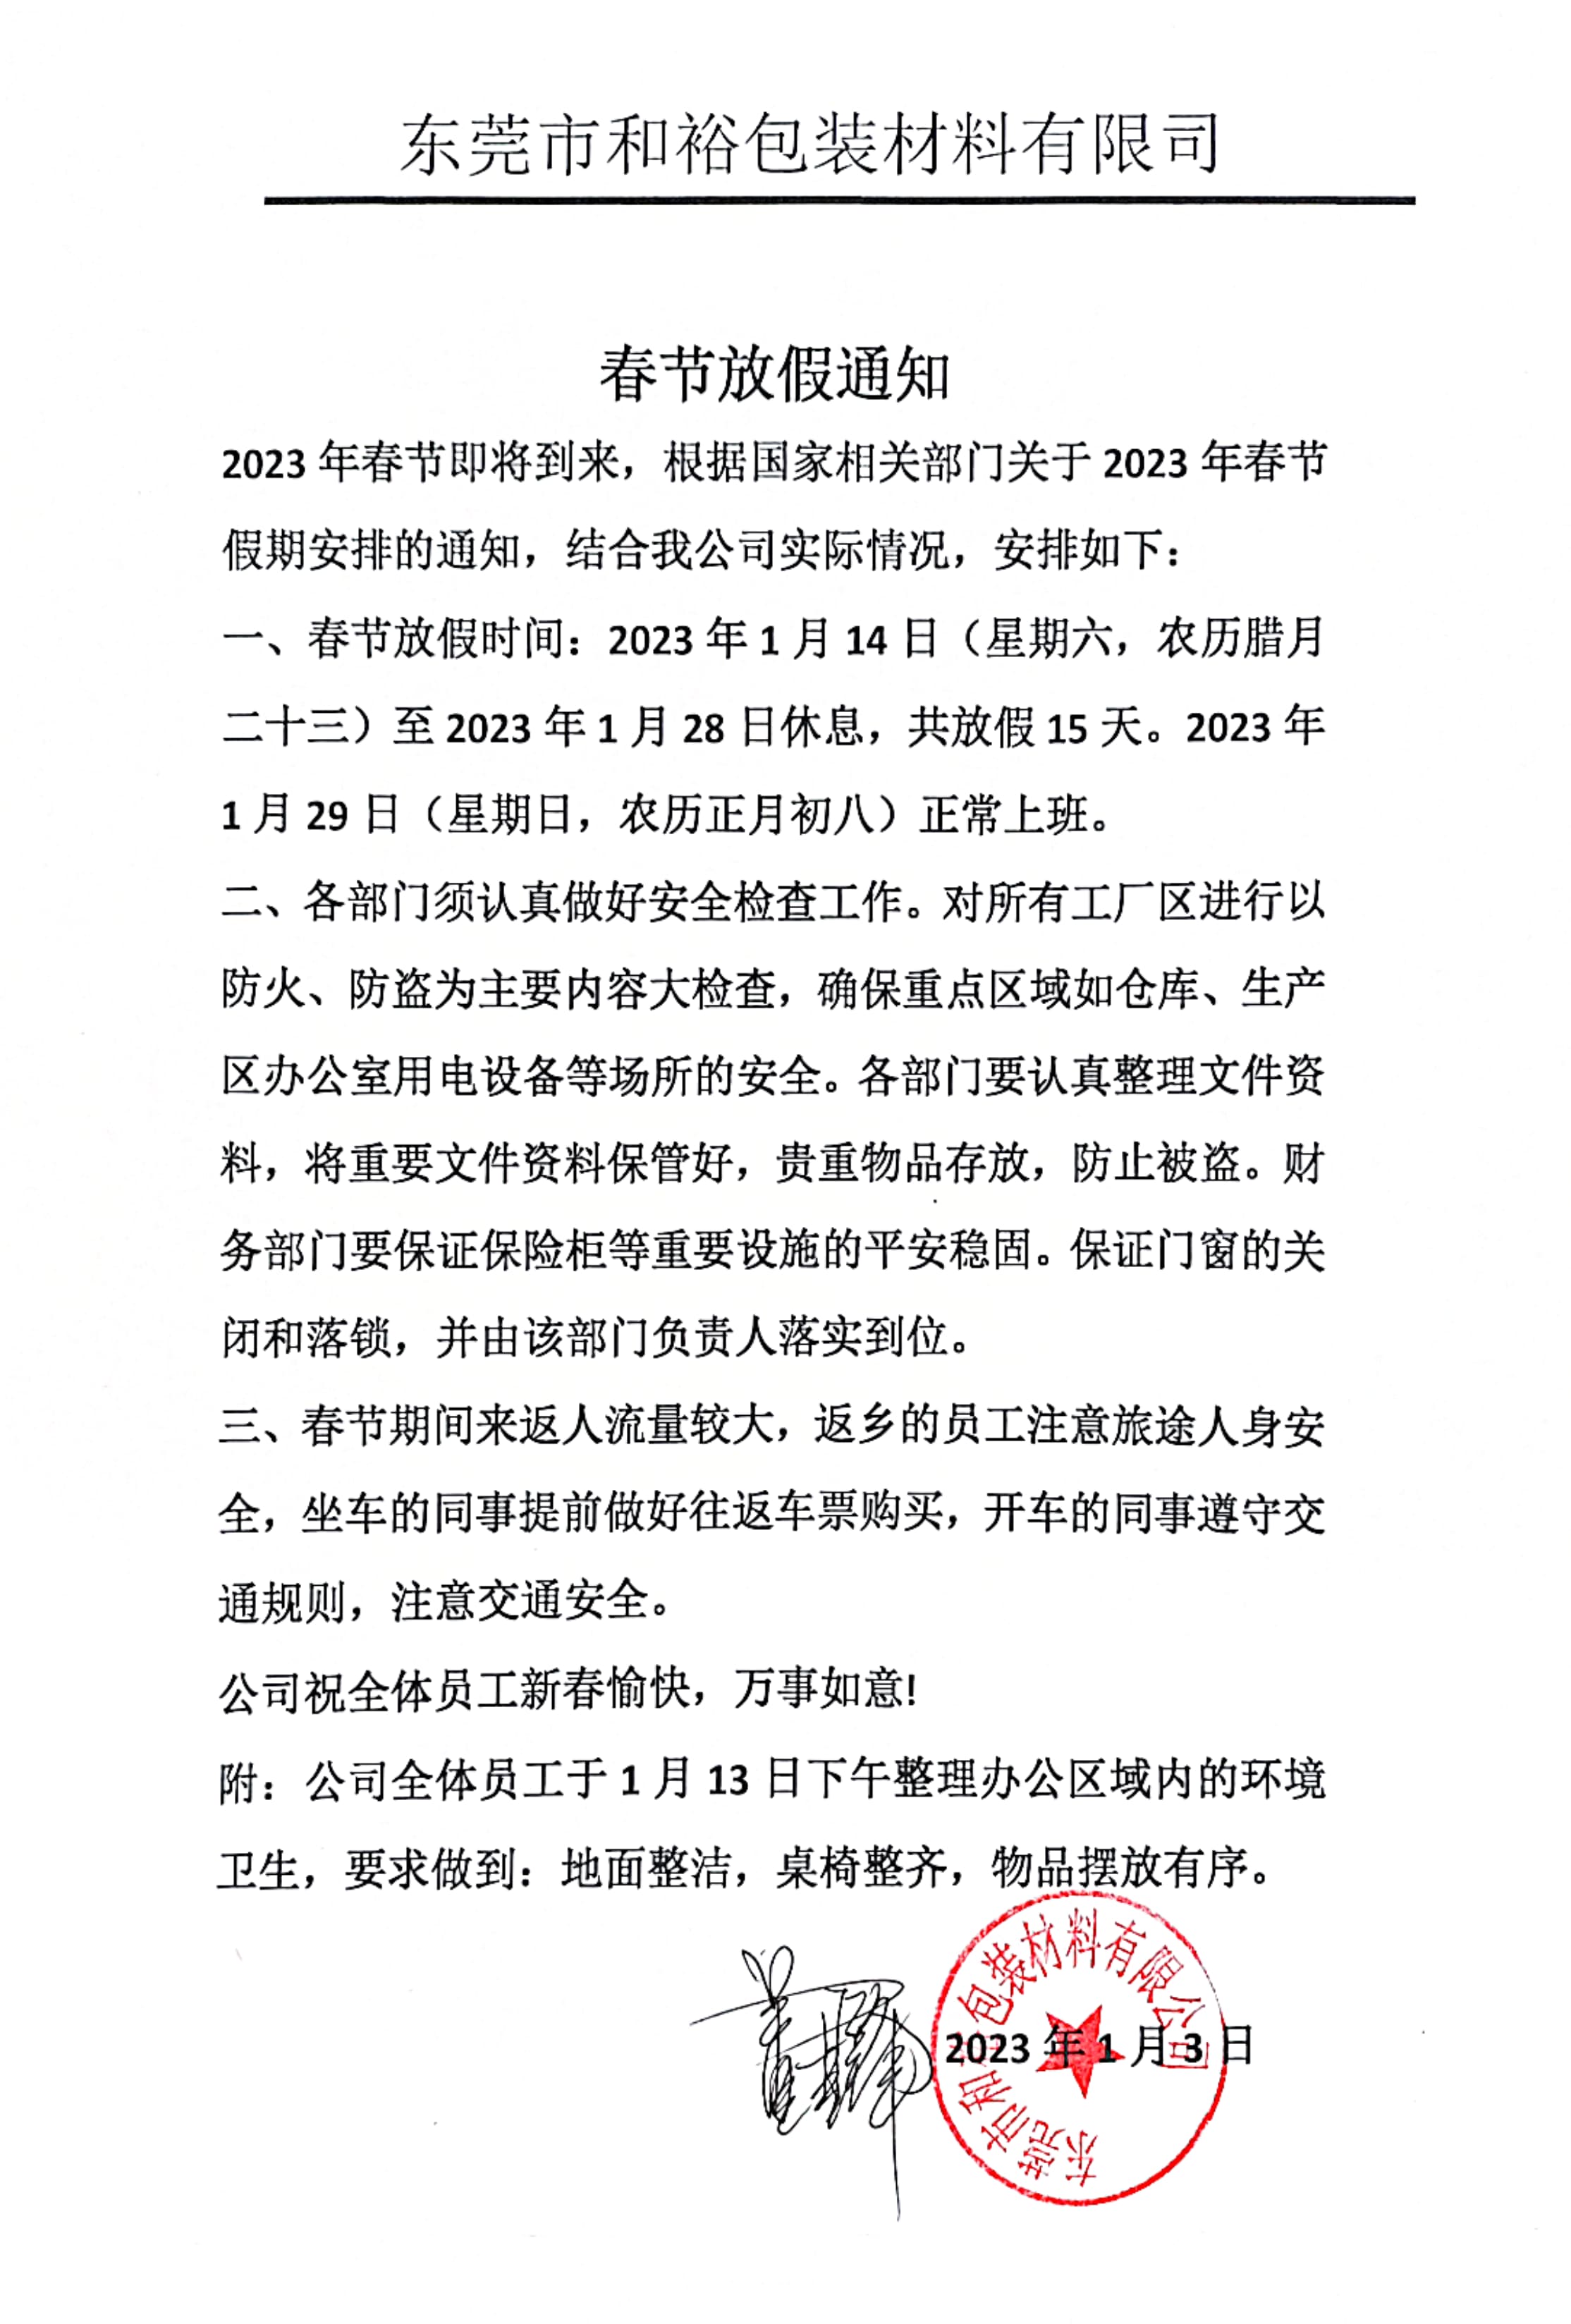 江门2023年和裕包装春节放假通知